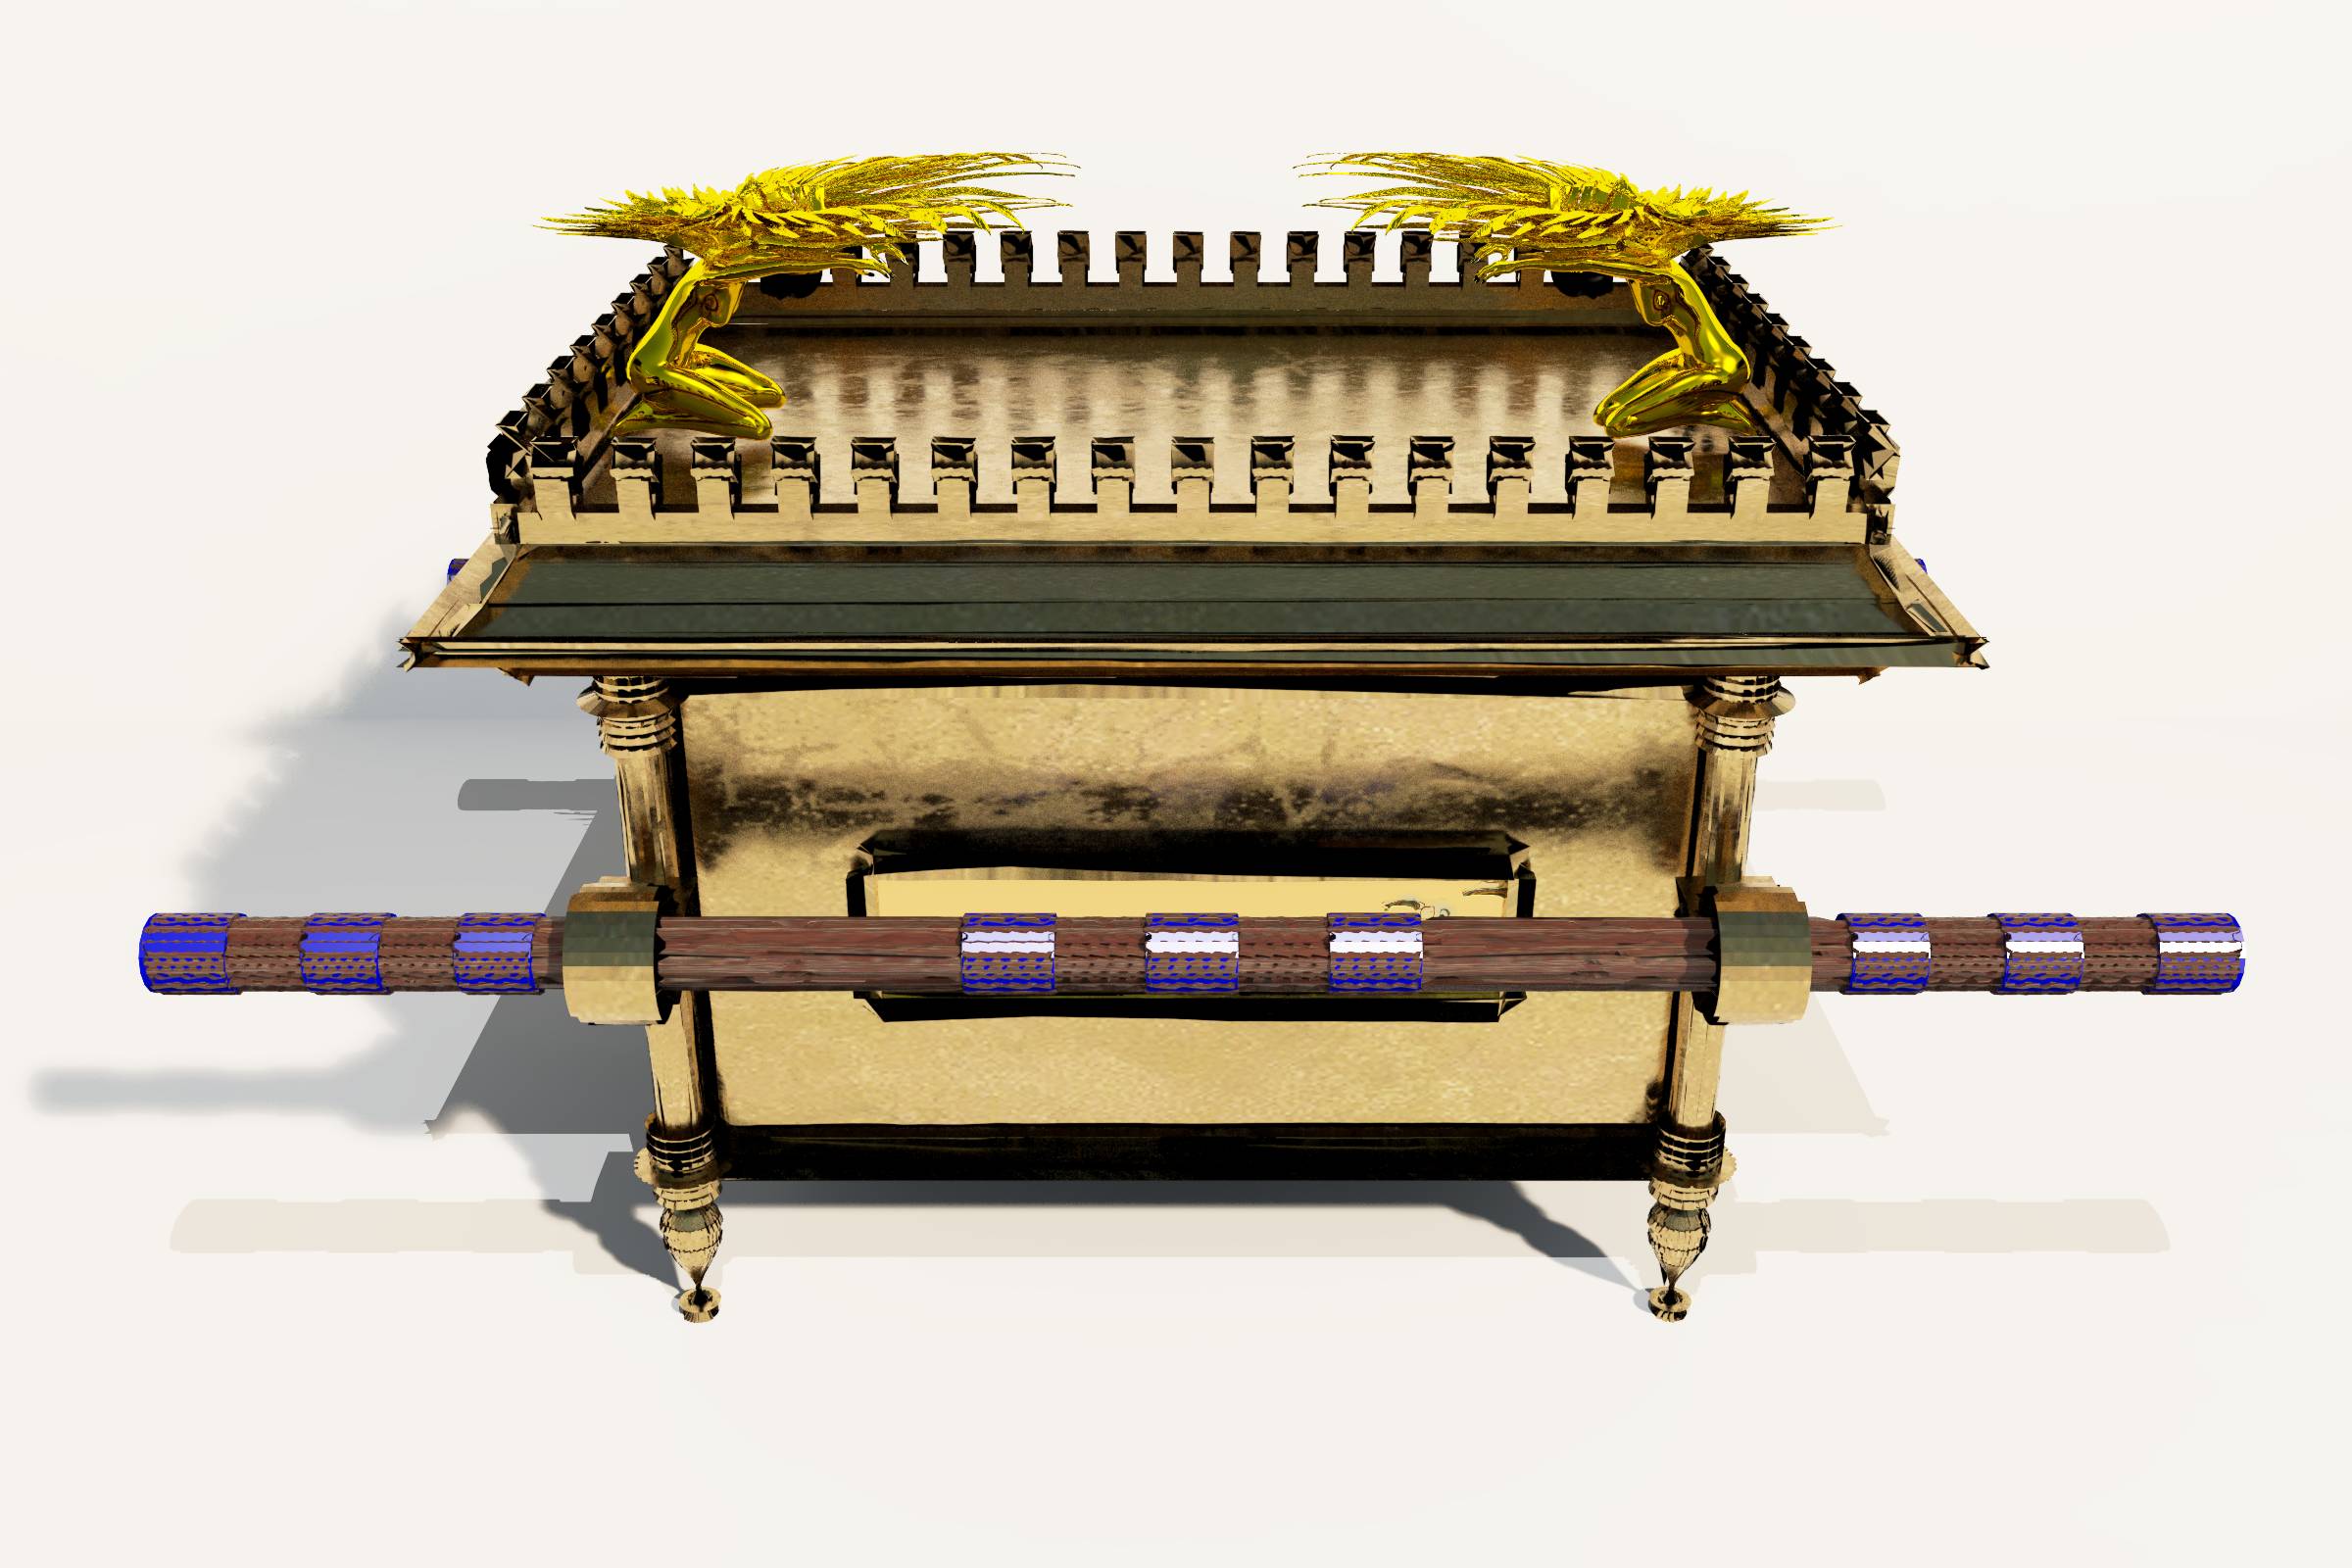 ark-of-the-covenant.jpg